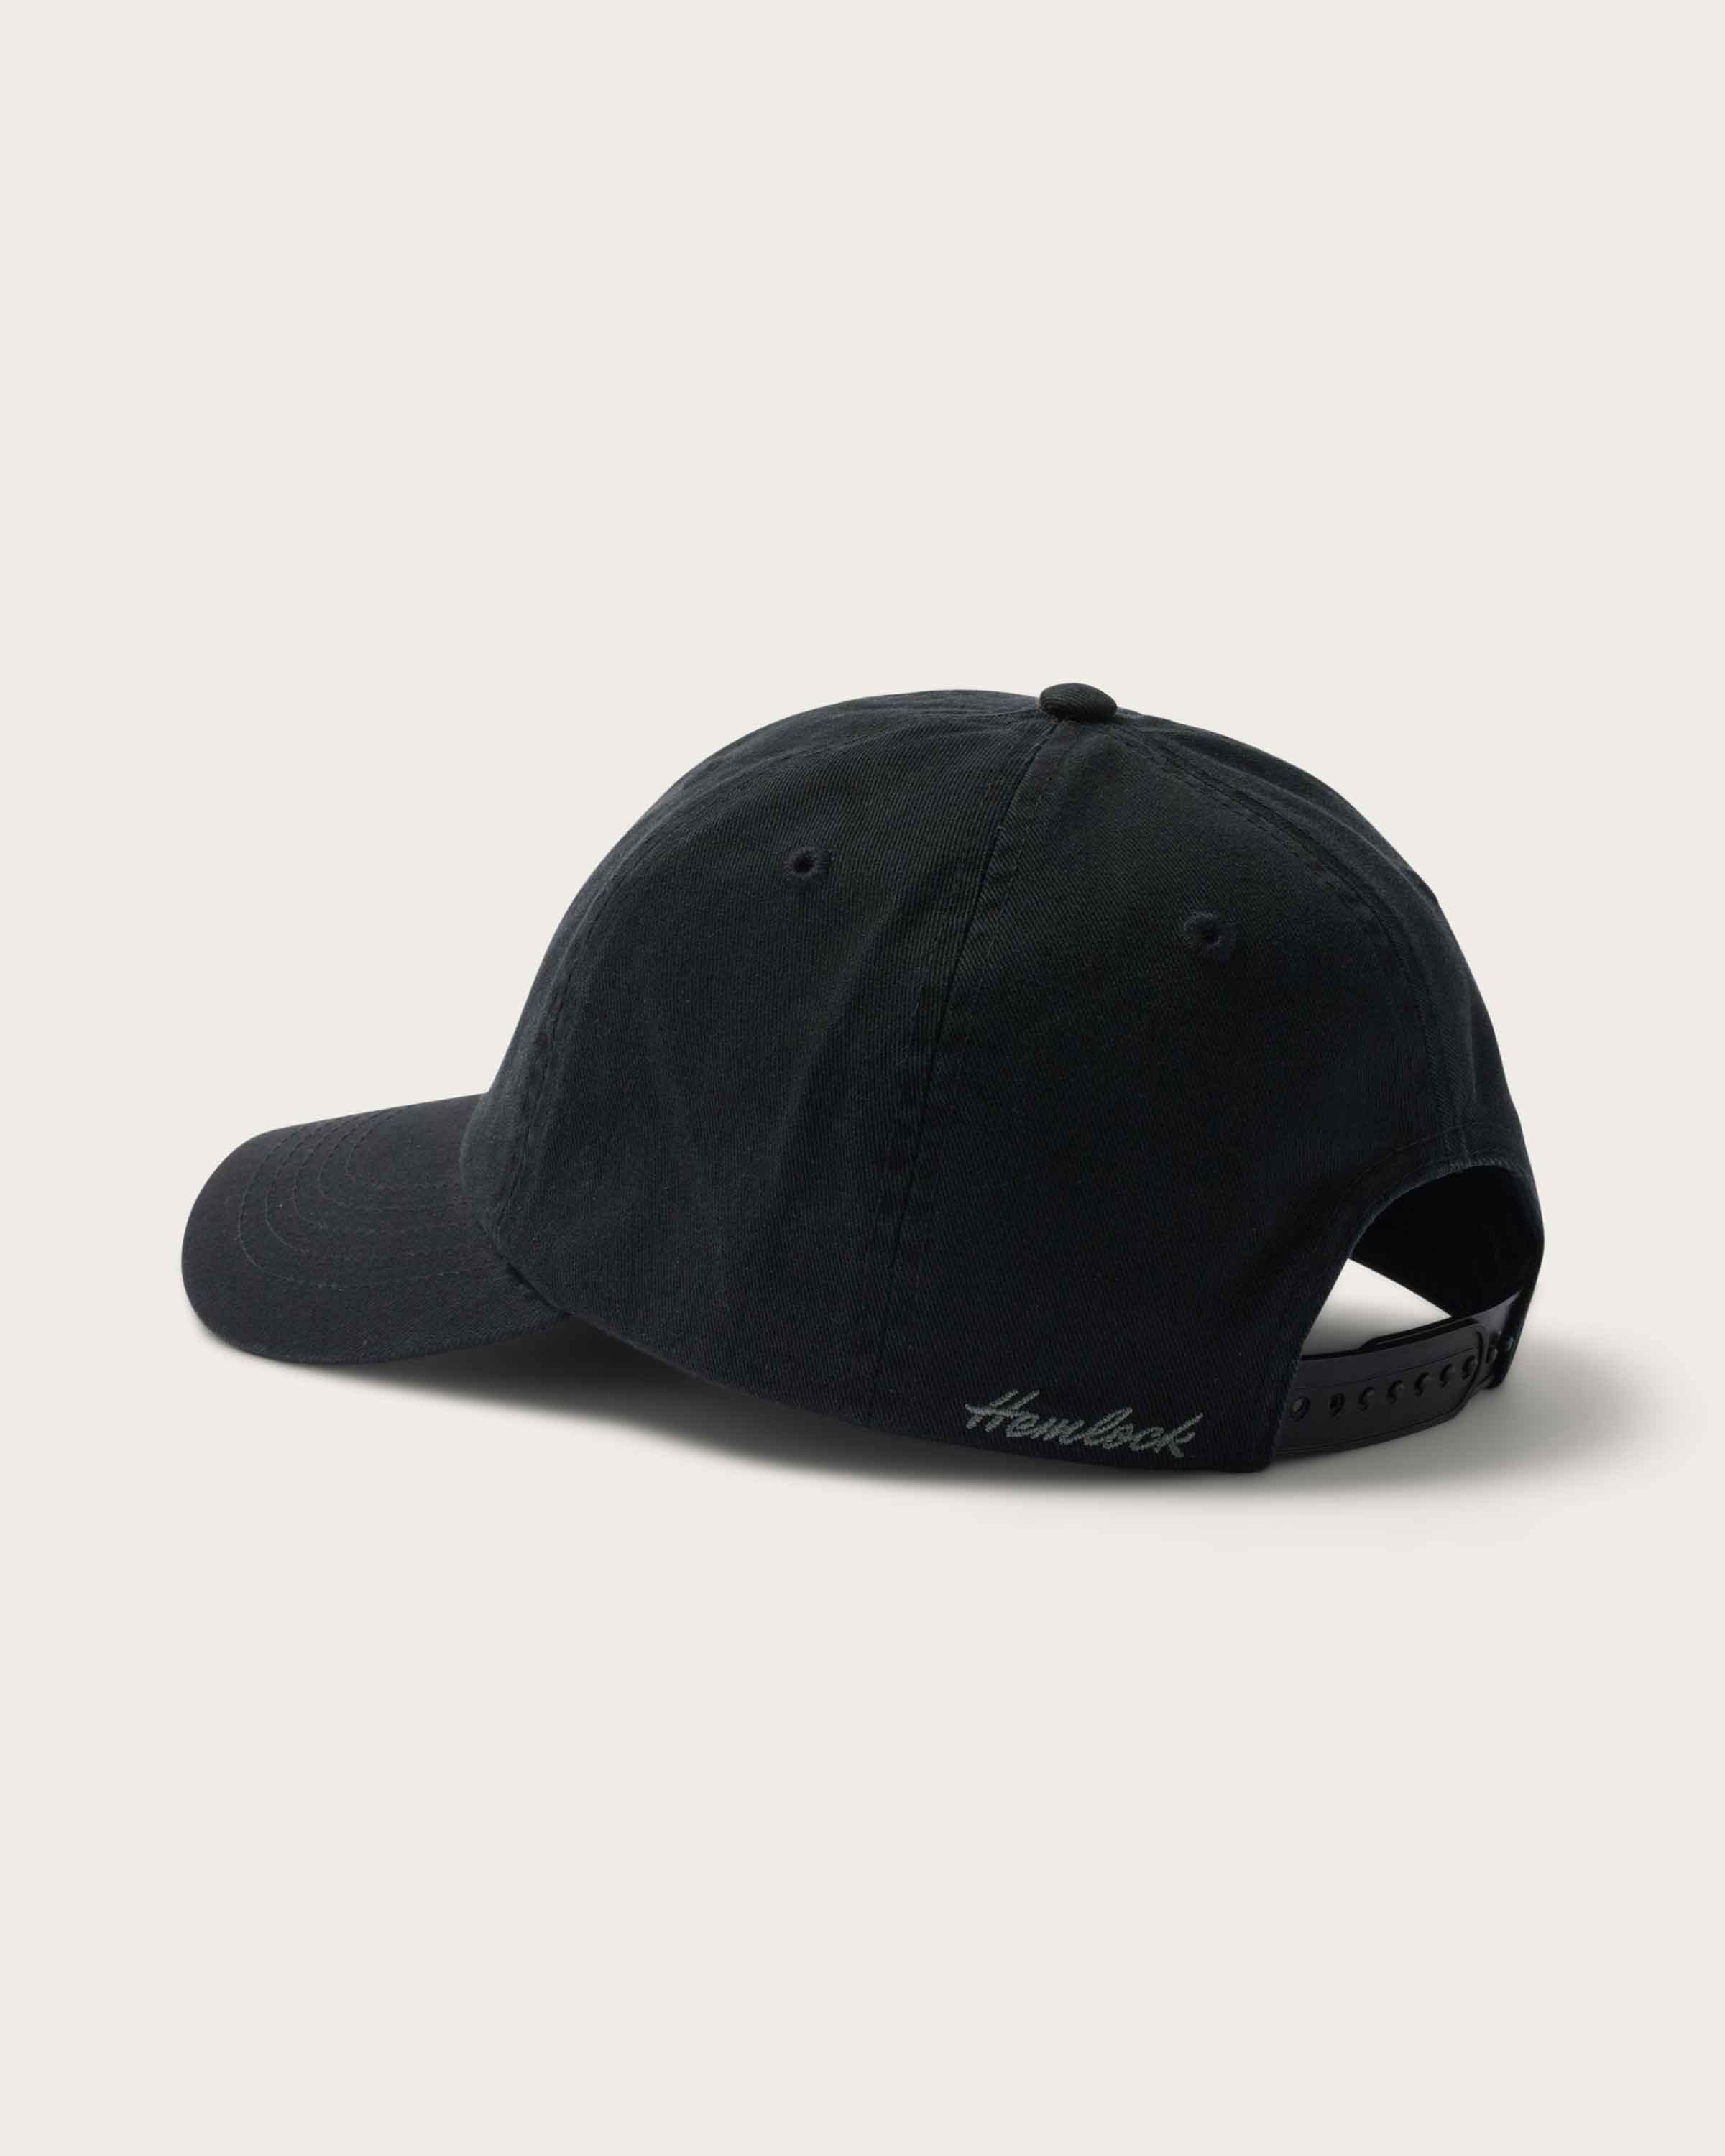 Berkley Cap in Black - undefined - Hemlock Hat Co. Ball Caps